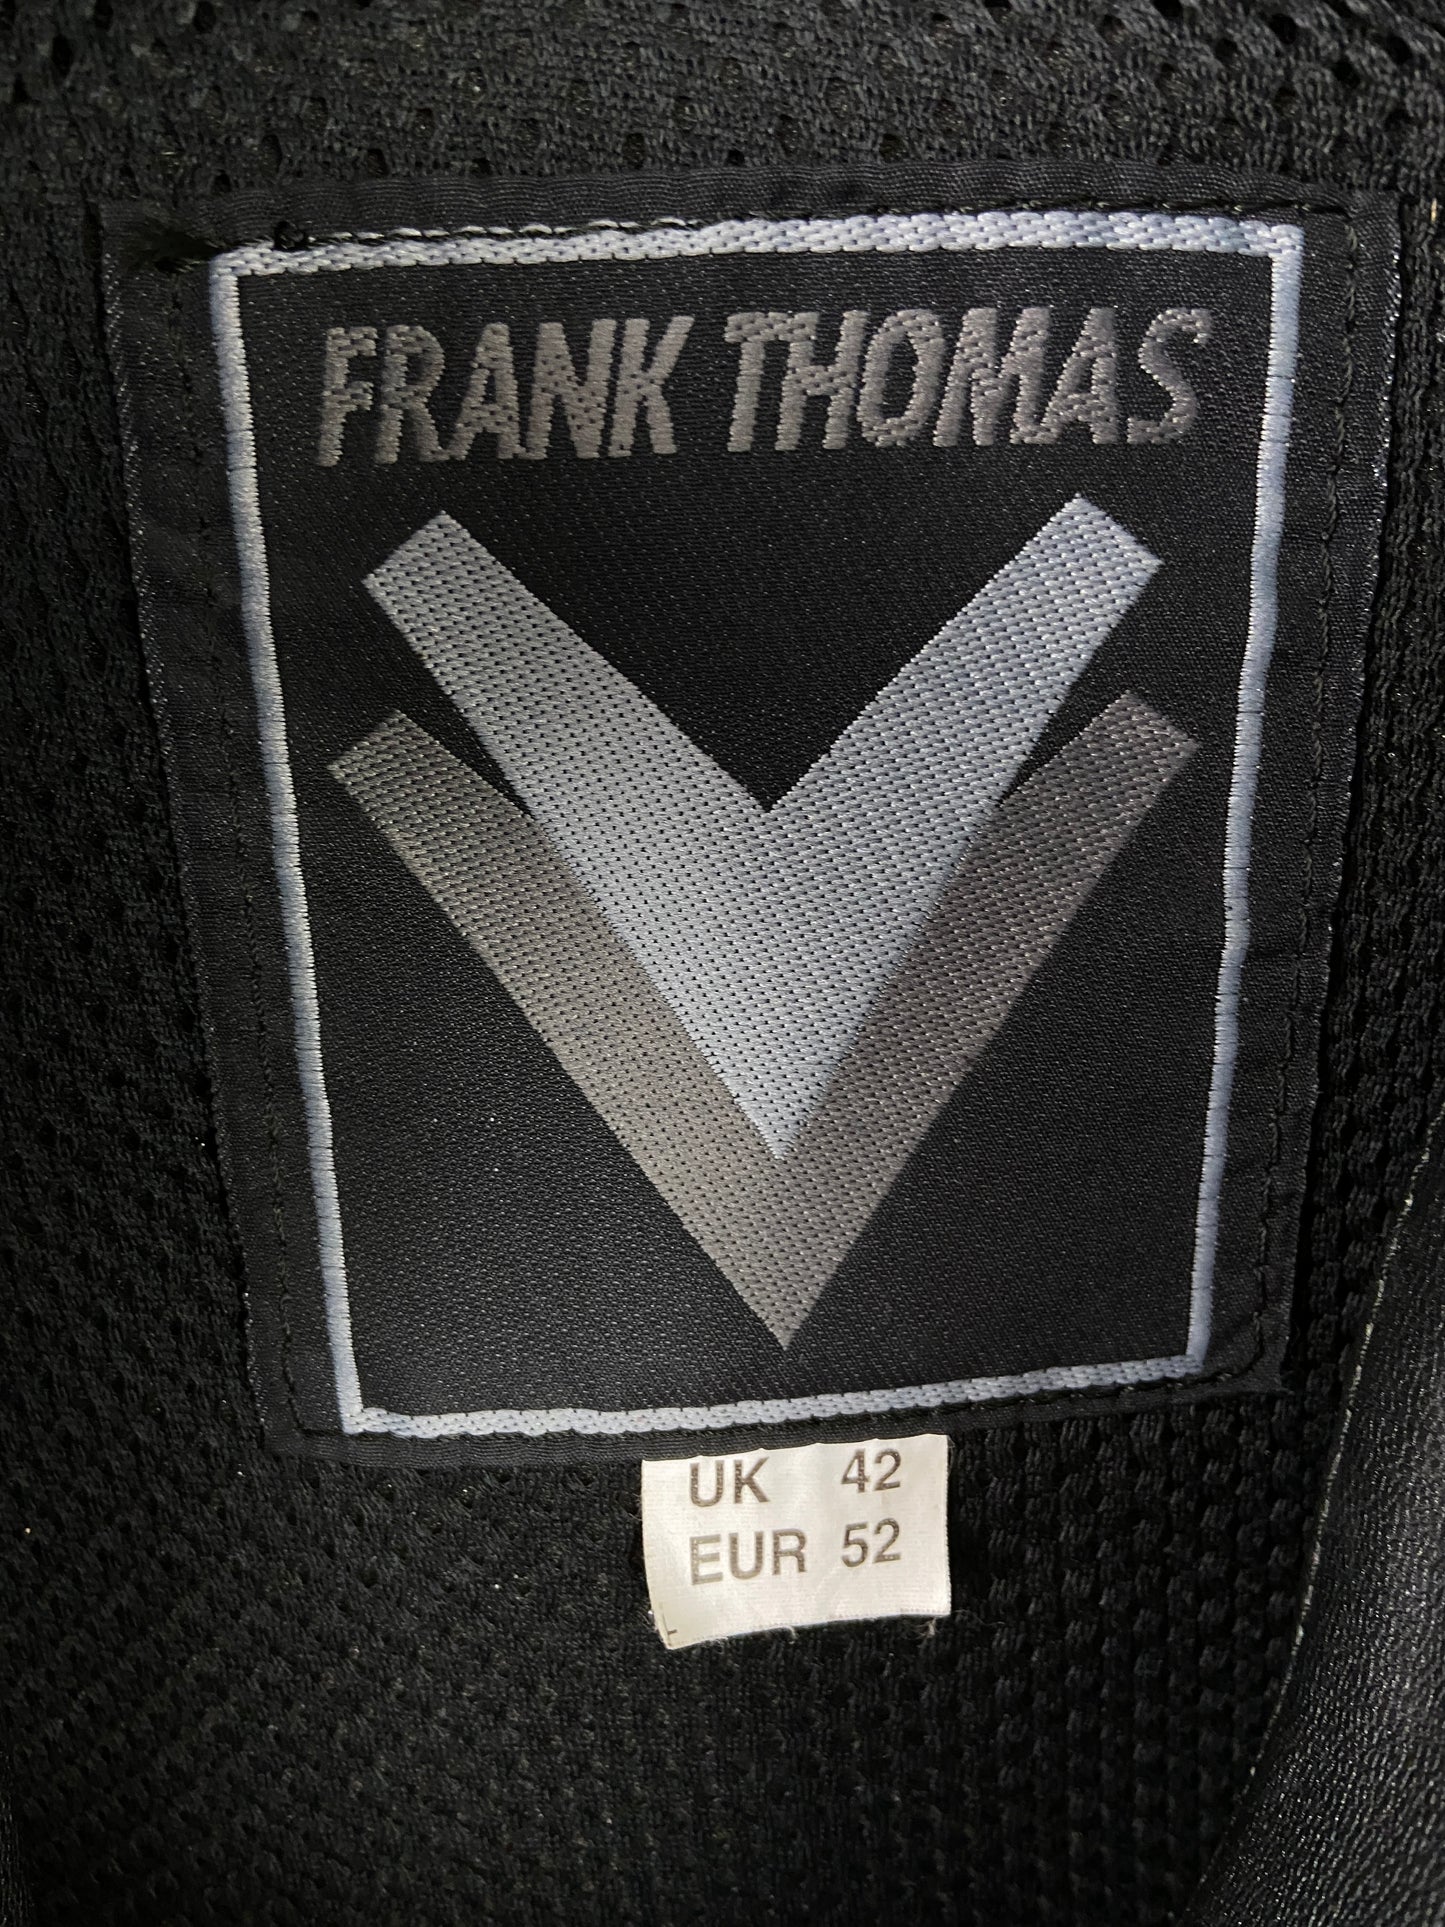 Frank Thomas 90s Leather Motorbike Jacket